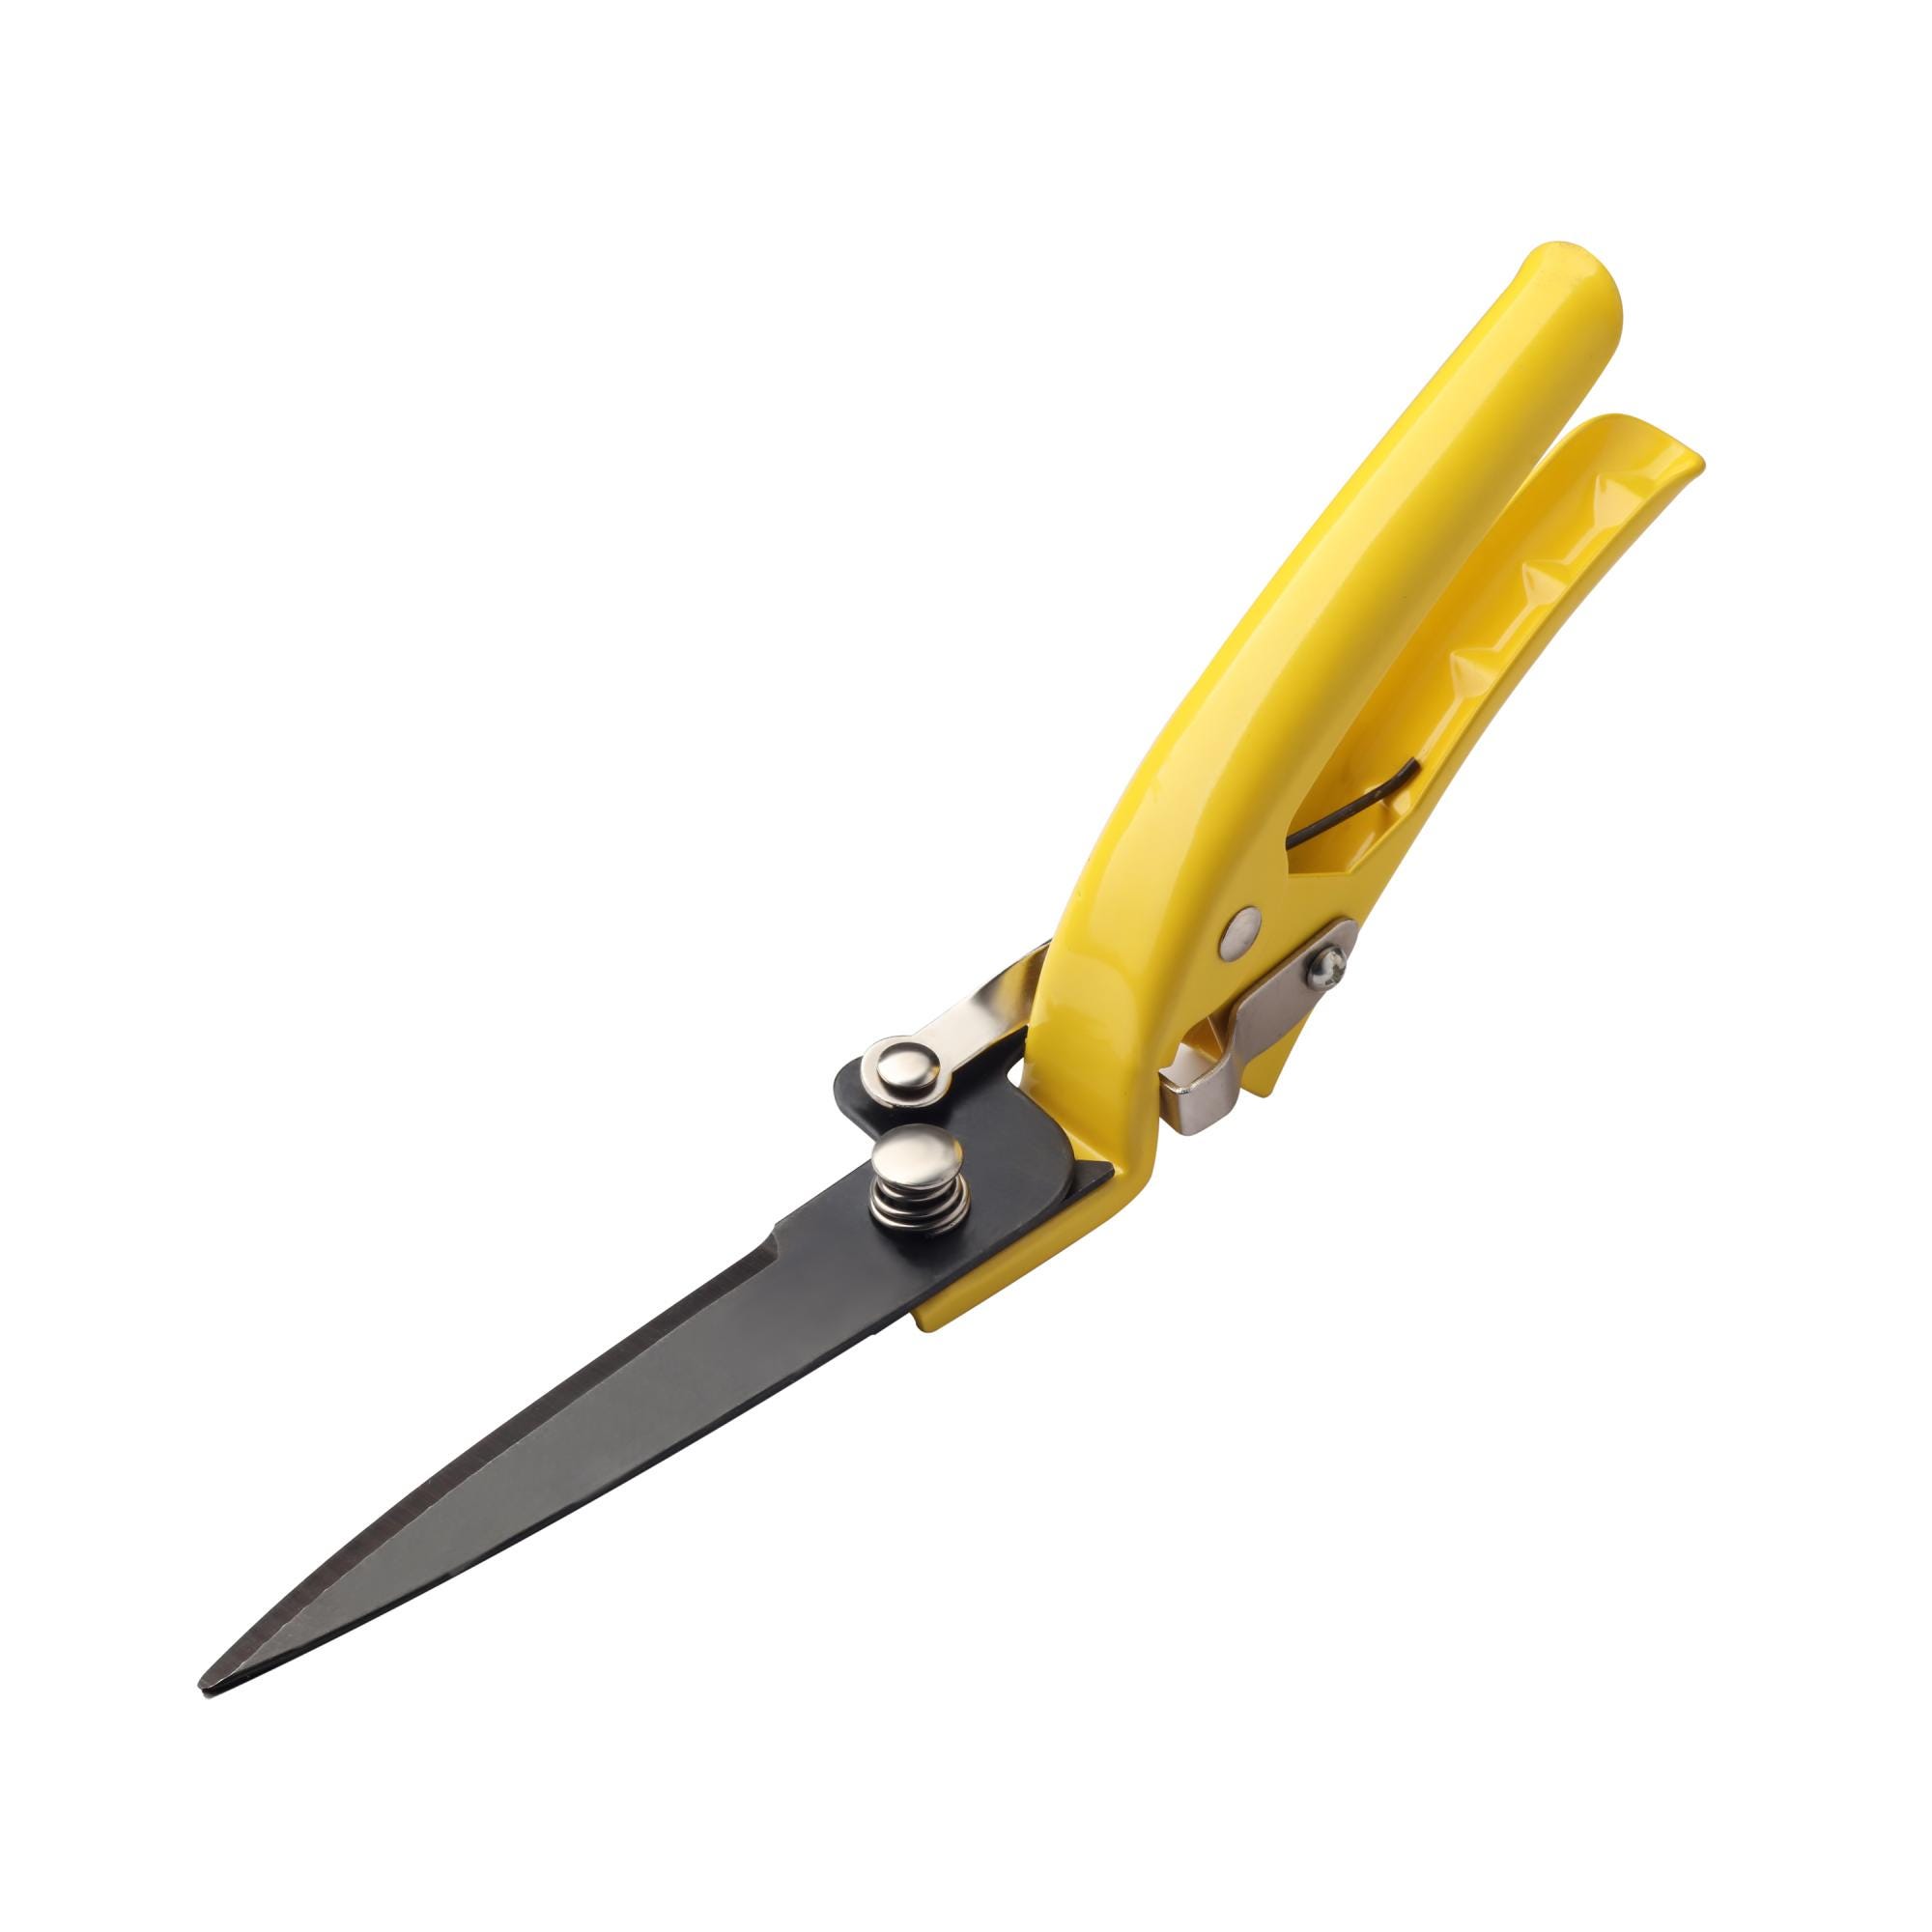 Couteau scie lame acier inoxydable, L22,5 cm, jaune